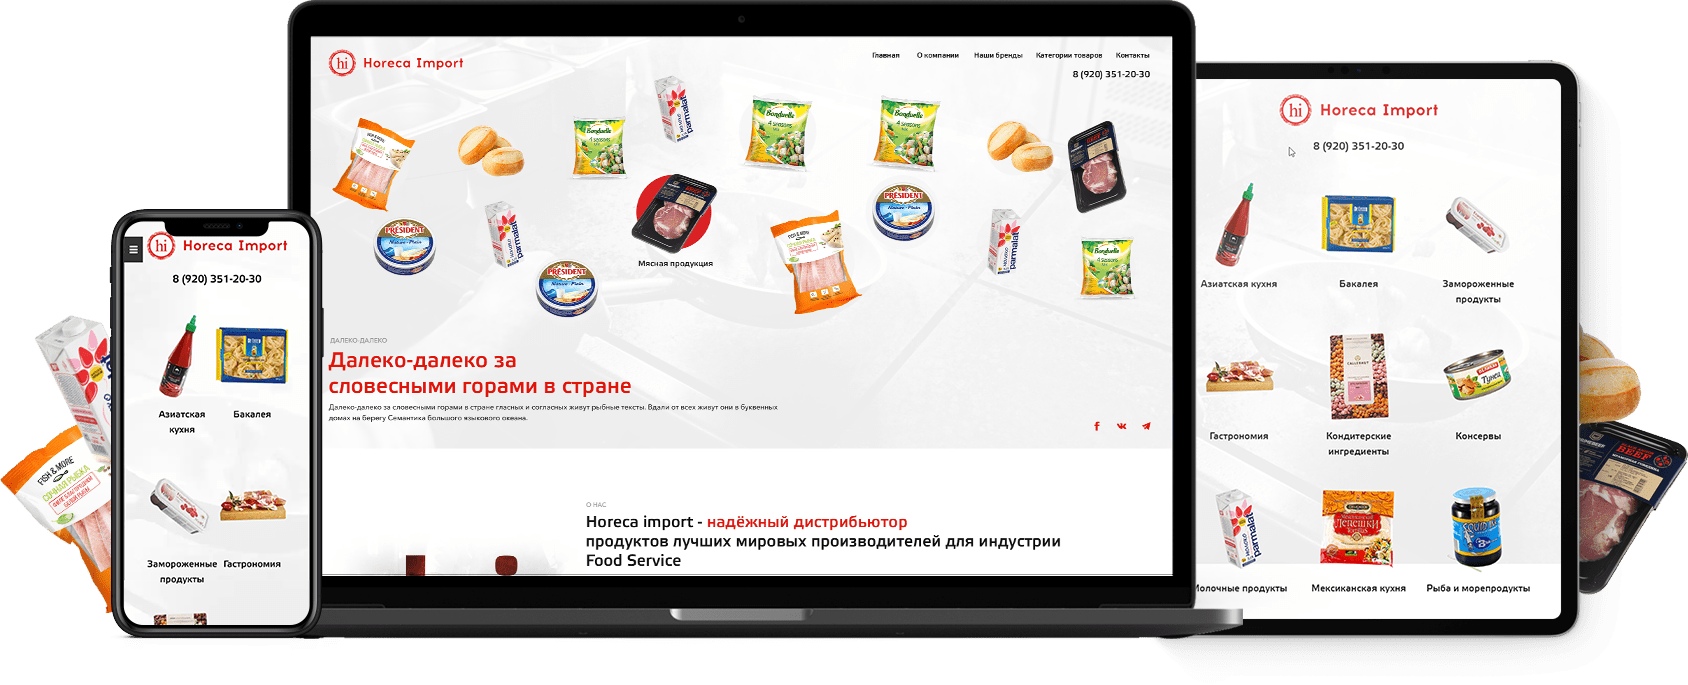 Сайт-каталог продуктов питания Horeca